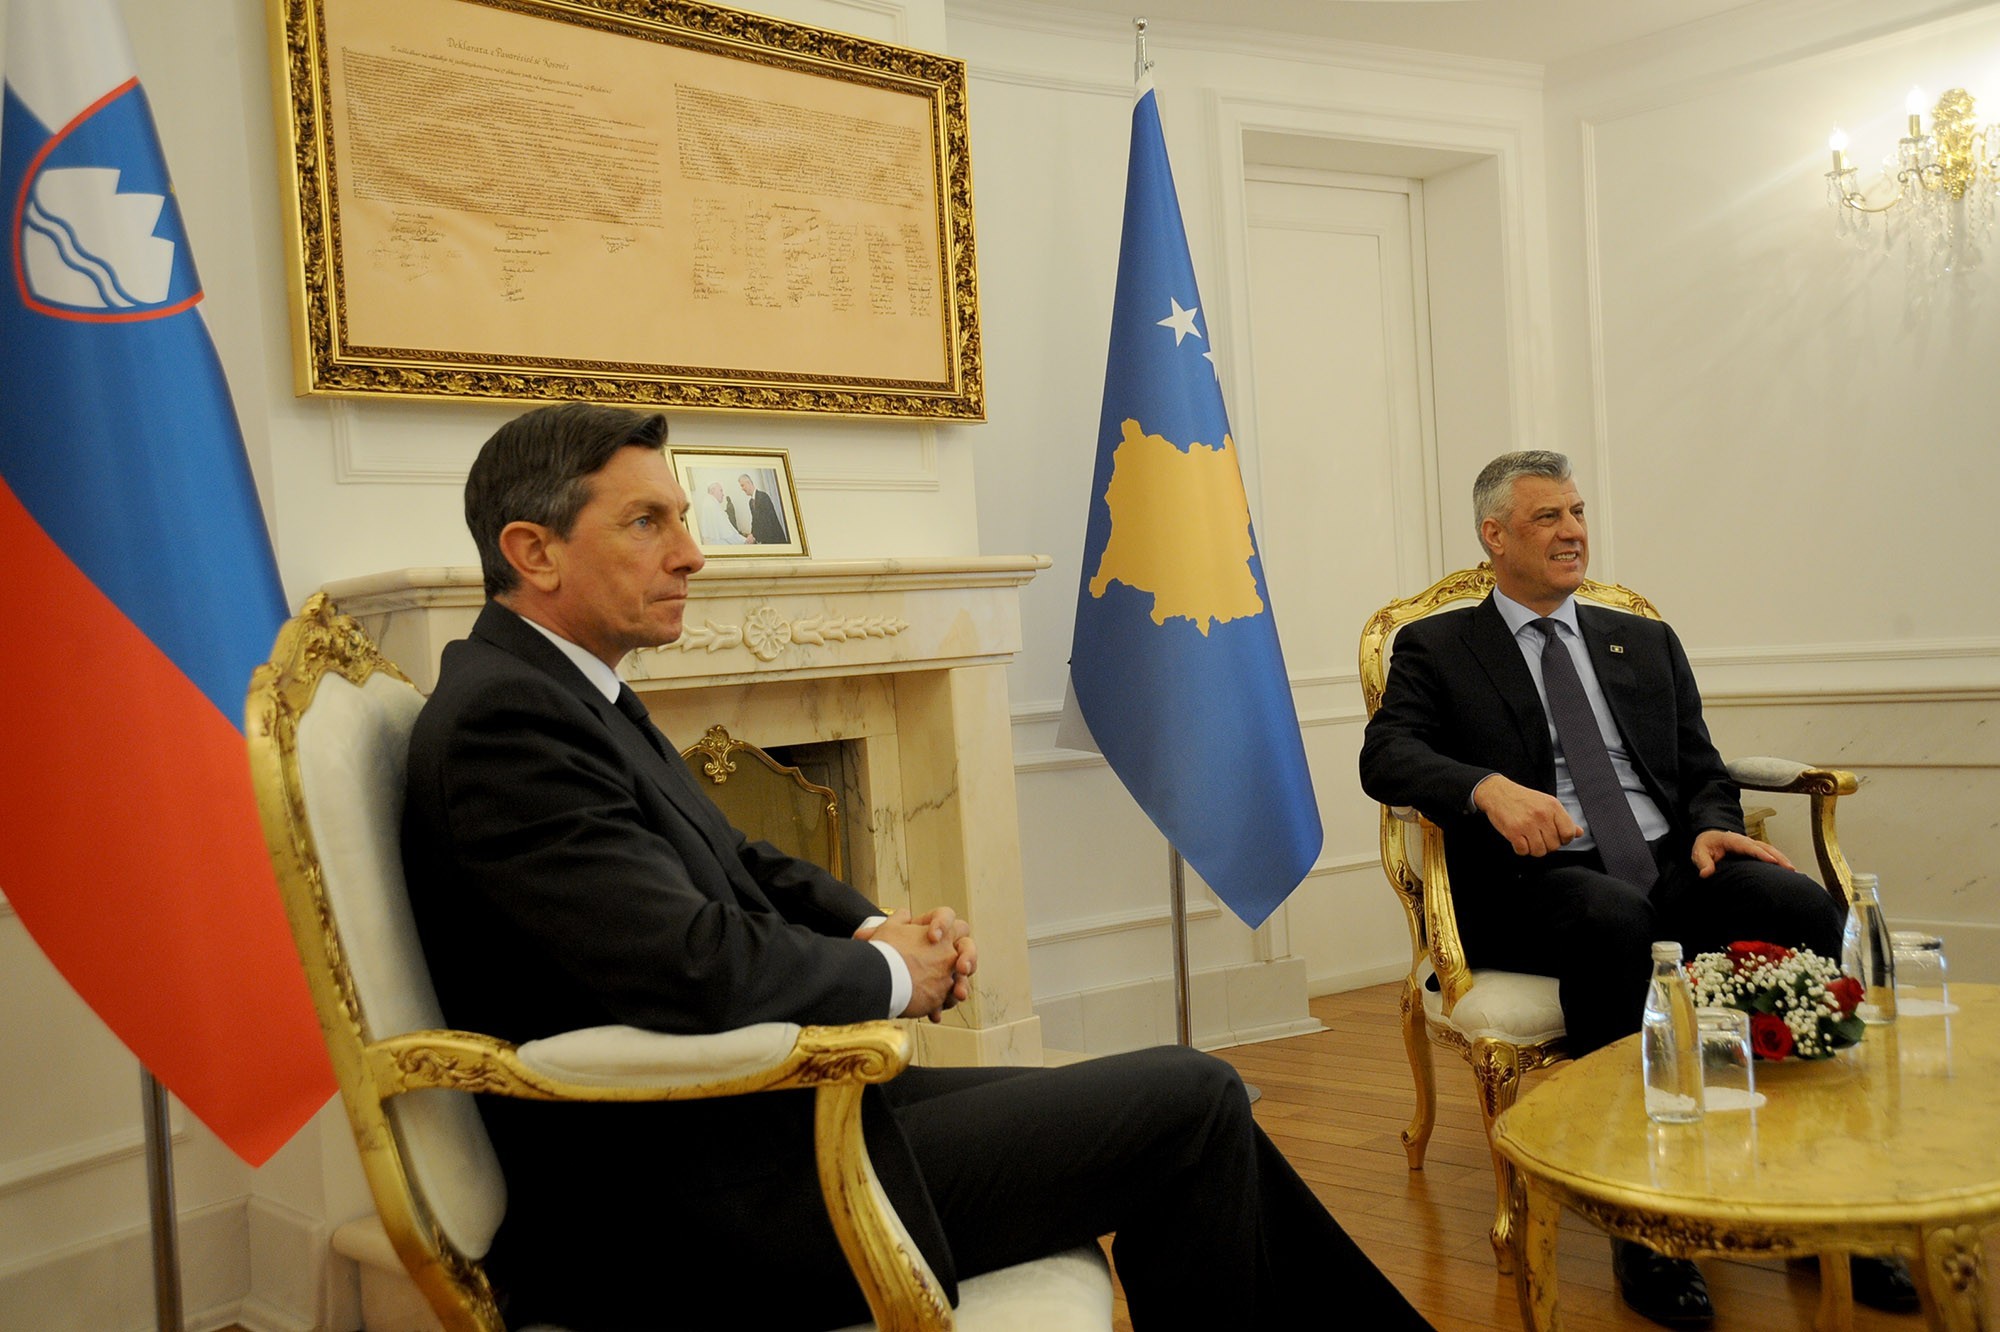 Ali Pahorja bolj skrbi priznanje Kosova, kot usoda arbitražnega sporazuma? Namesto za “svoj” arbitražni sporazum, bo Pahor lobiral za priznanje Kosova